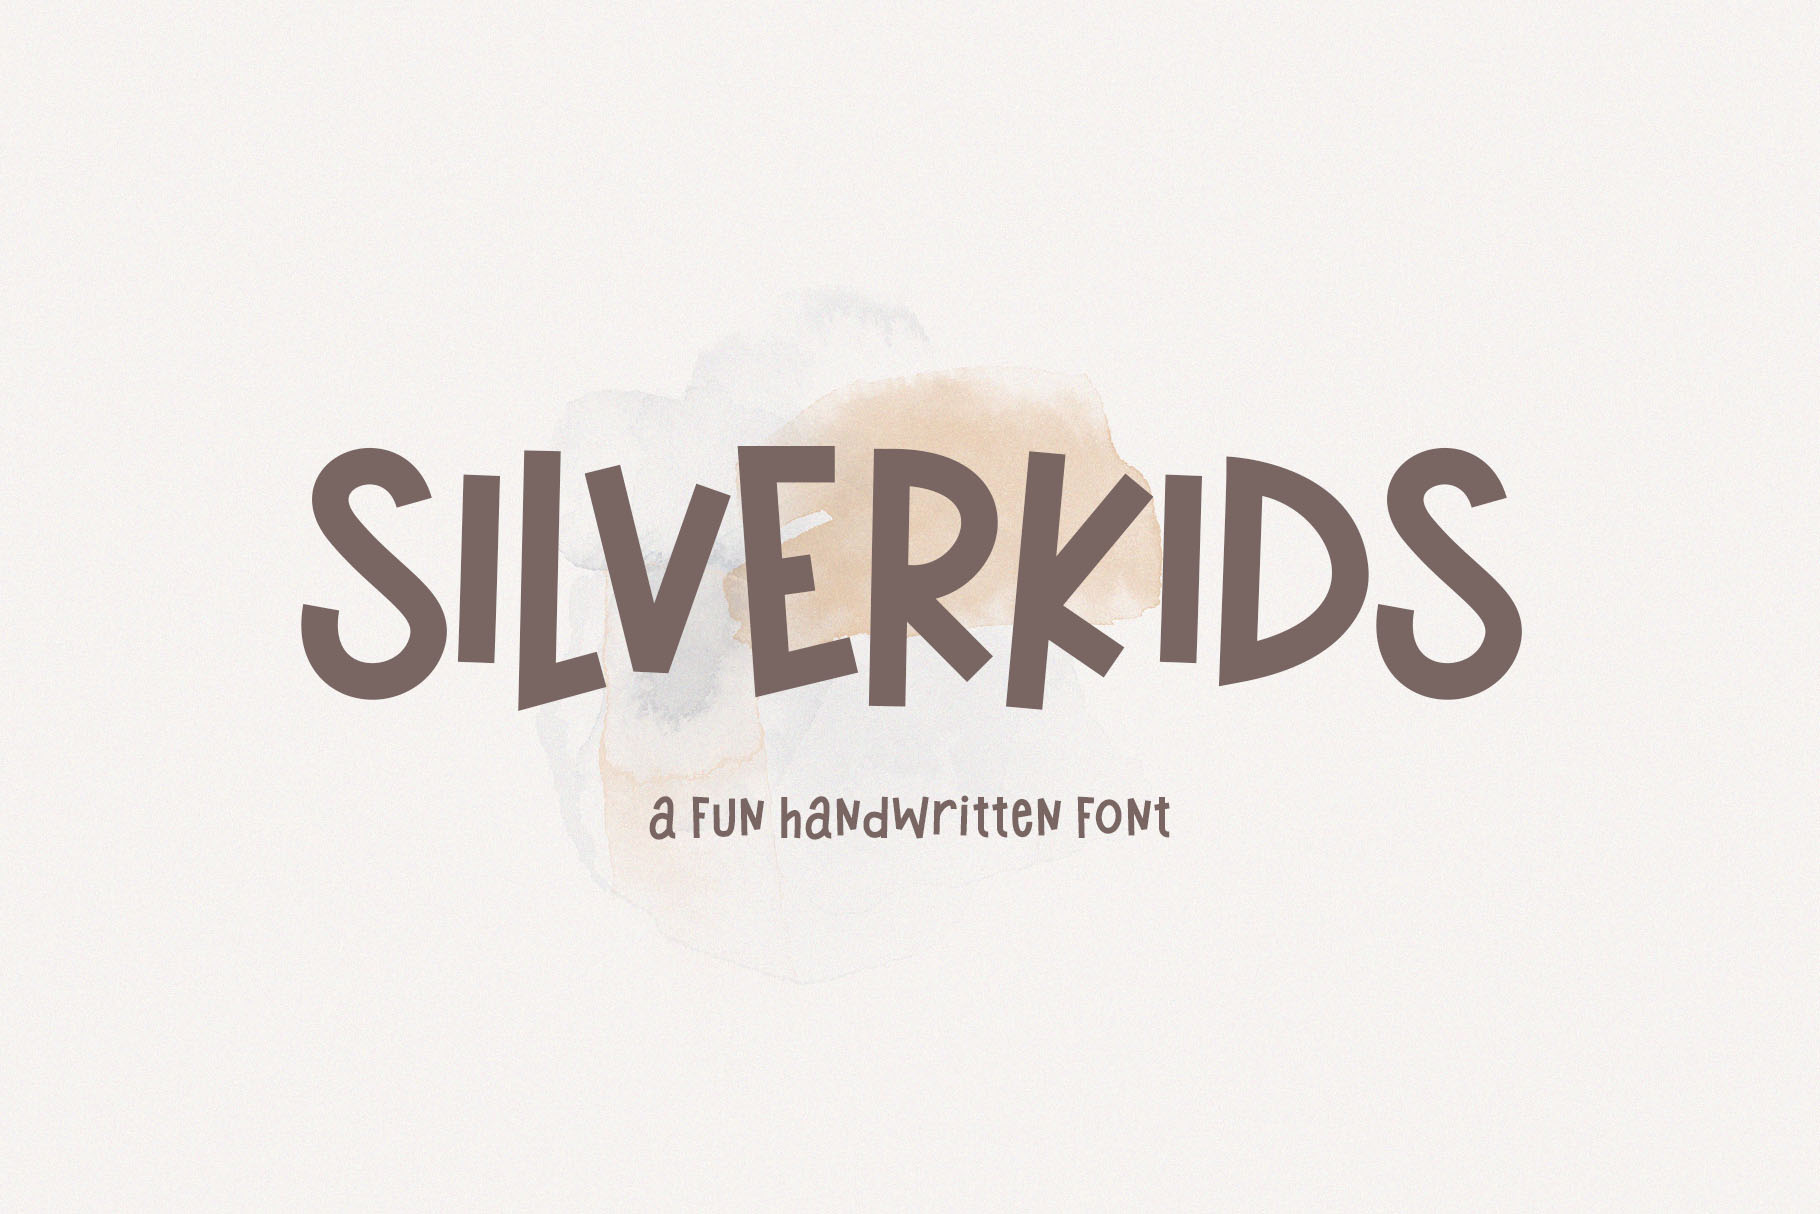 Silverkids